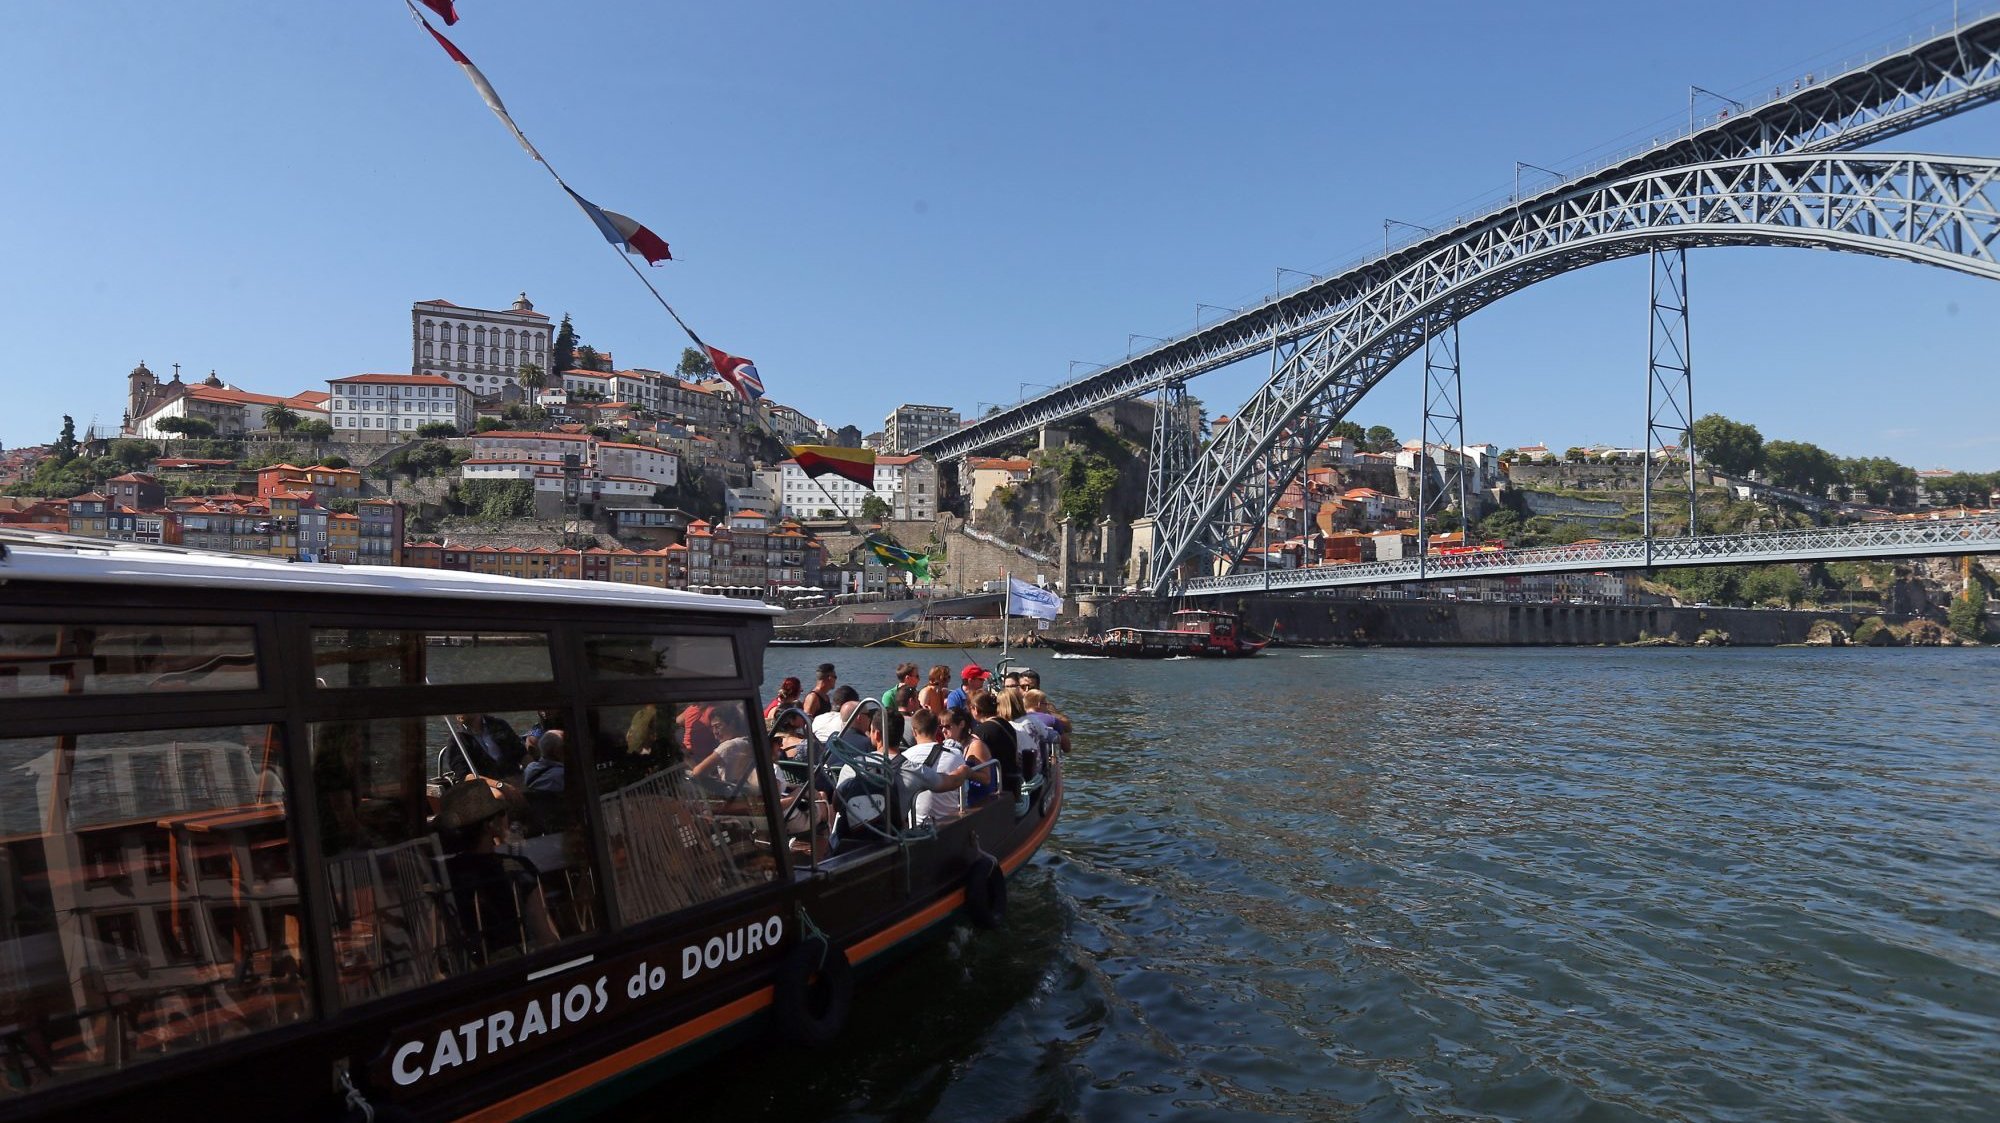 Entre 2014 e março de 2020, o município do Porto conseguiu captar mais de 1,4 mil milhões de euros em fundos europeus